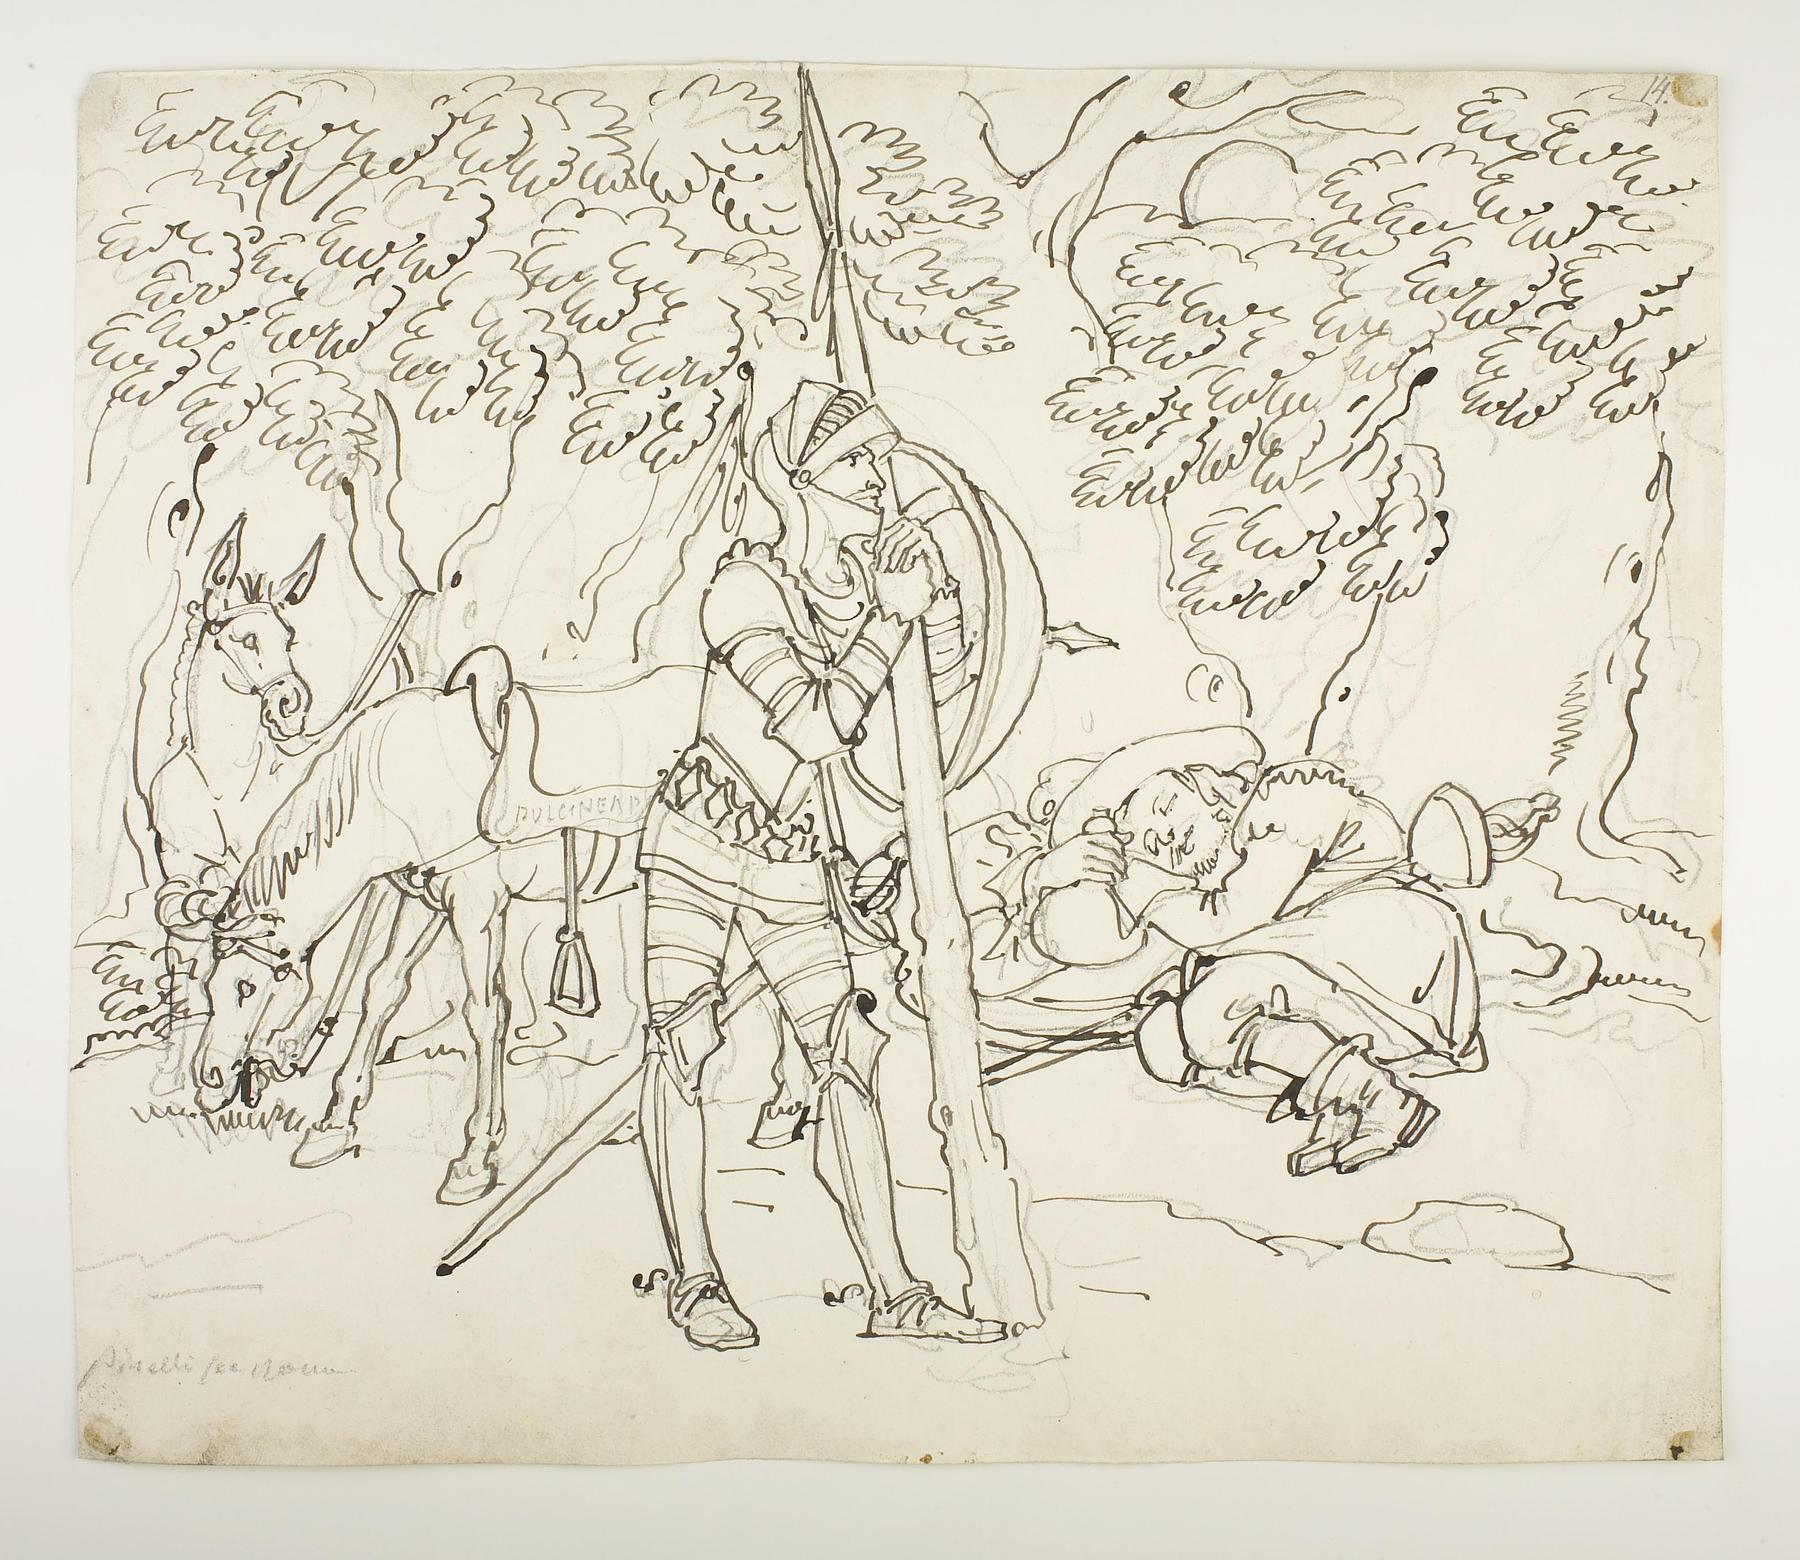 Don Quixote og Sancho Panza under egetræet, D573